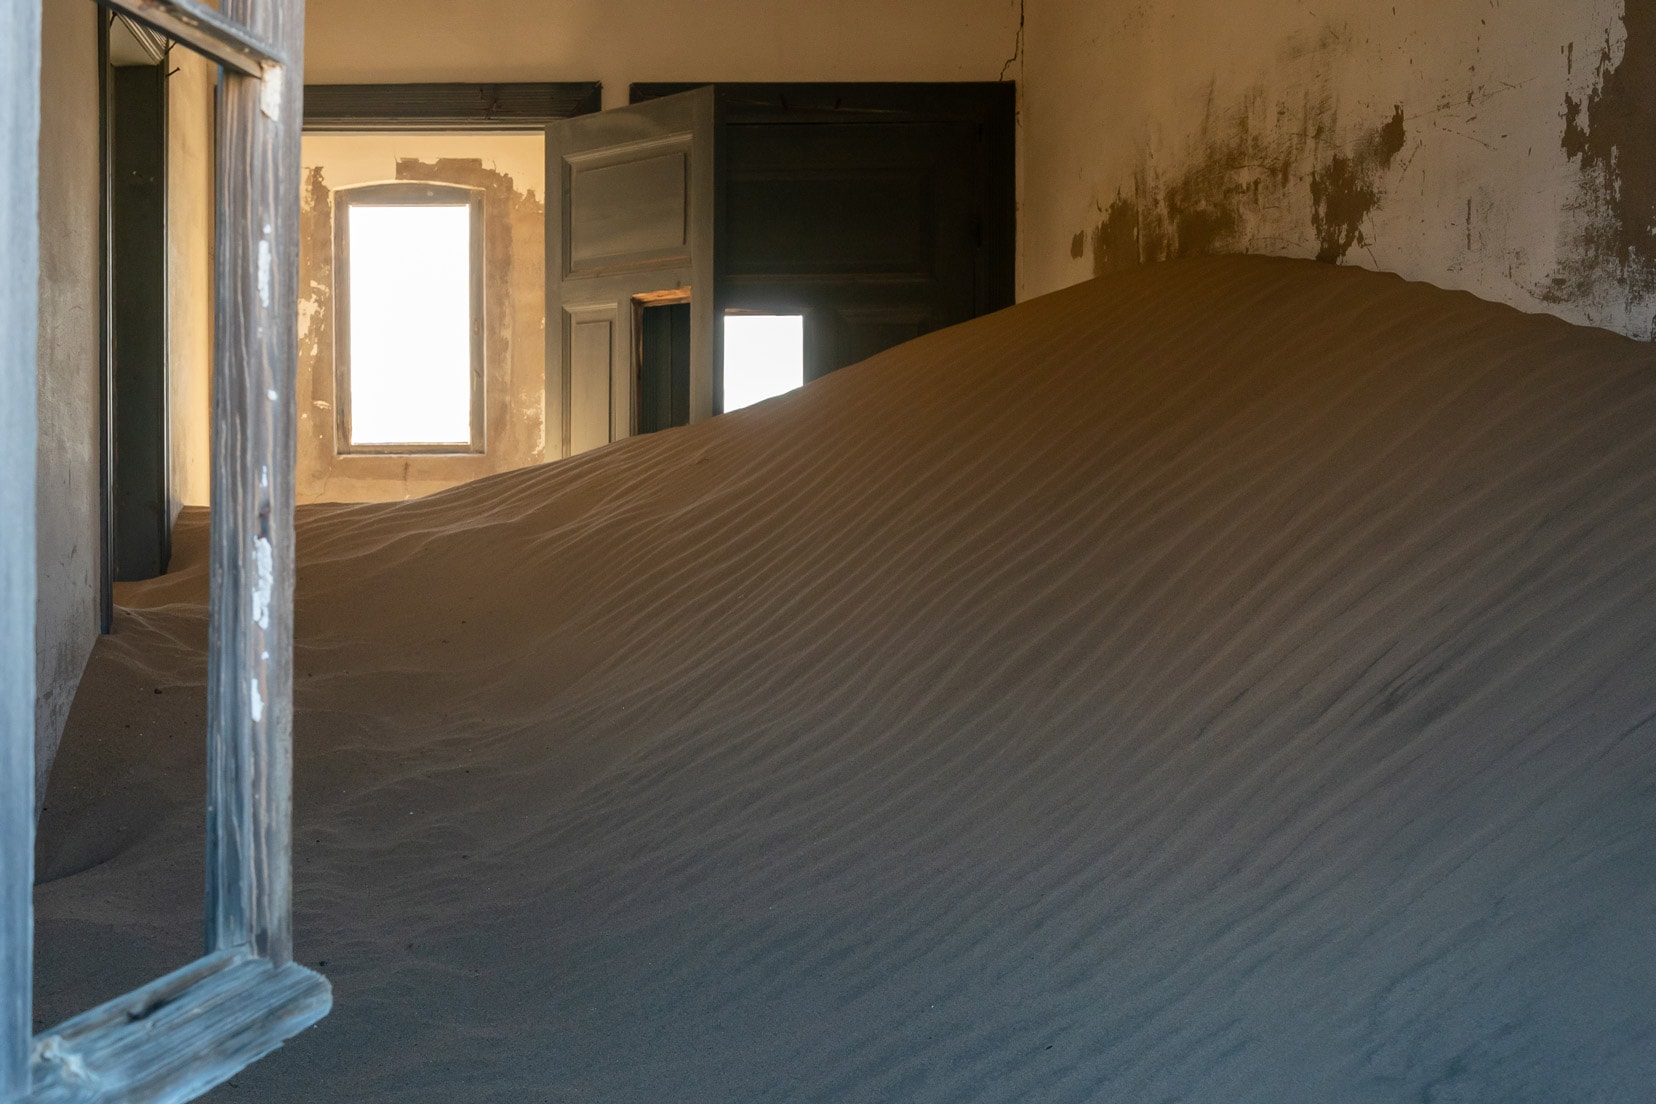 Kolmanskop room filled with sand 